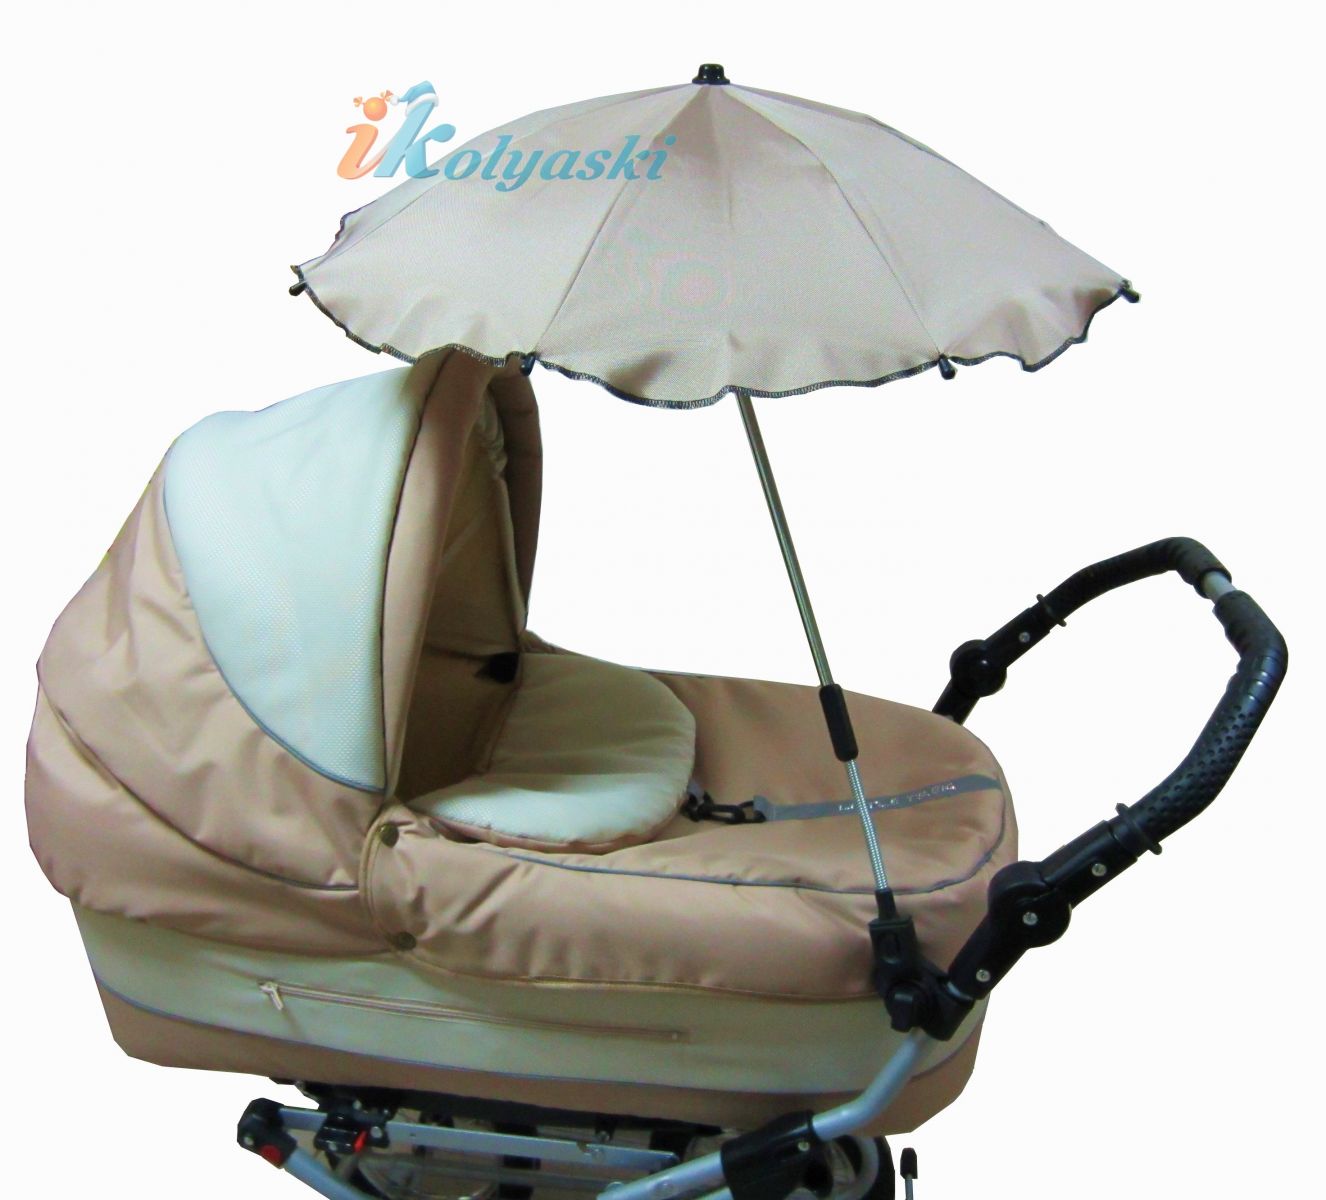 Зонтик для коляски, зонтик на коляску универсальный, зонтик от солнца для детской коляски, зонт для детской коляски, купить зонтик для коляски,  зонт на коляску, зонтик для детской коляски, куплю зонт для коляски, зонтик для коляски фото, зонтик для 